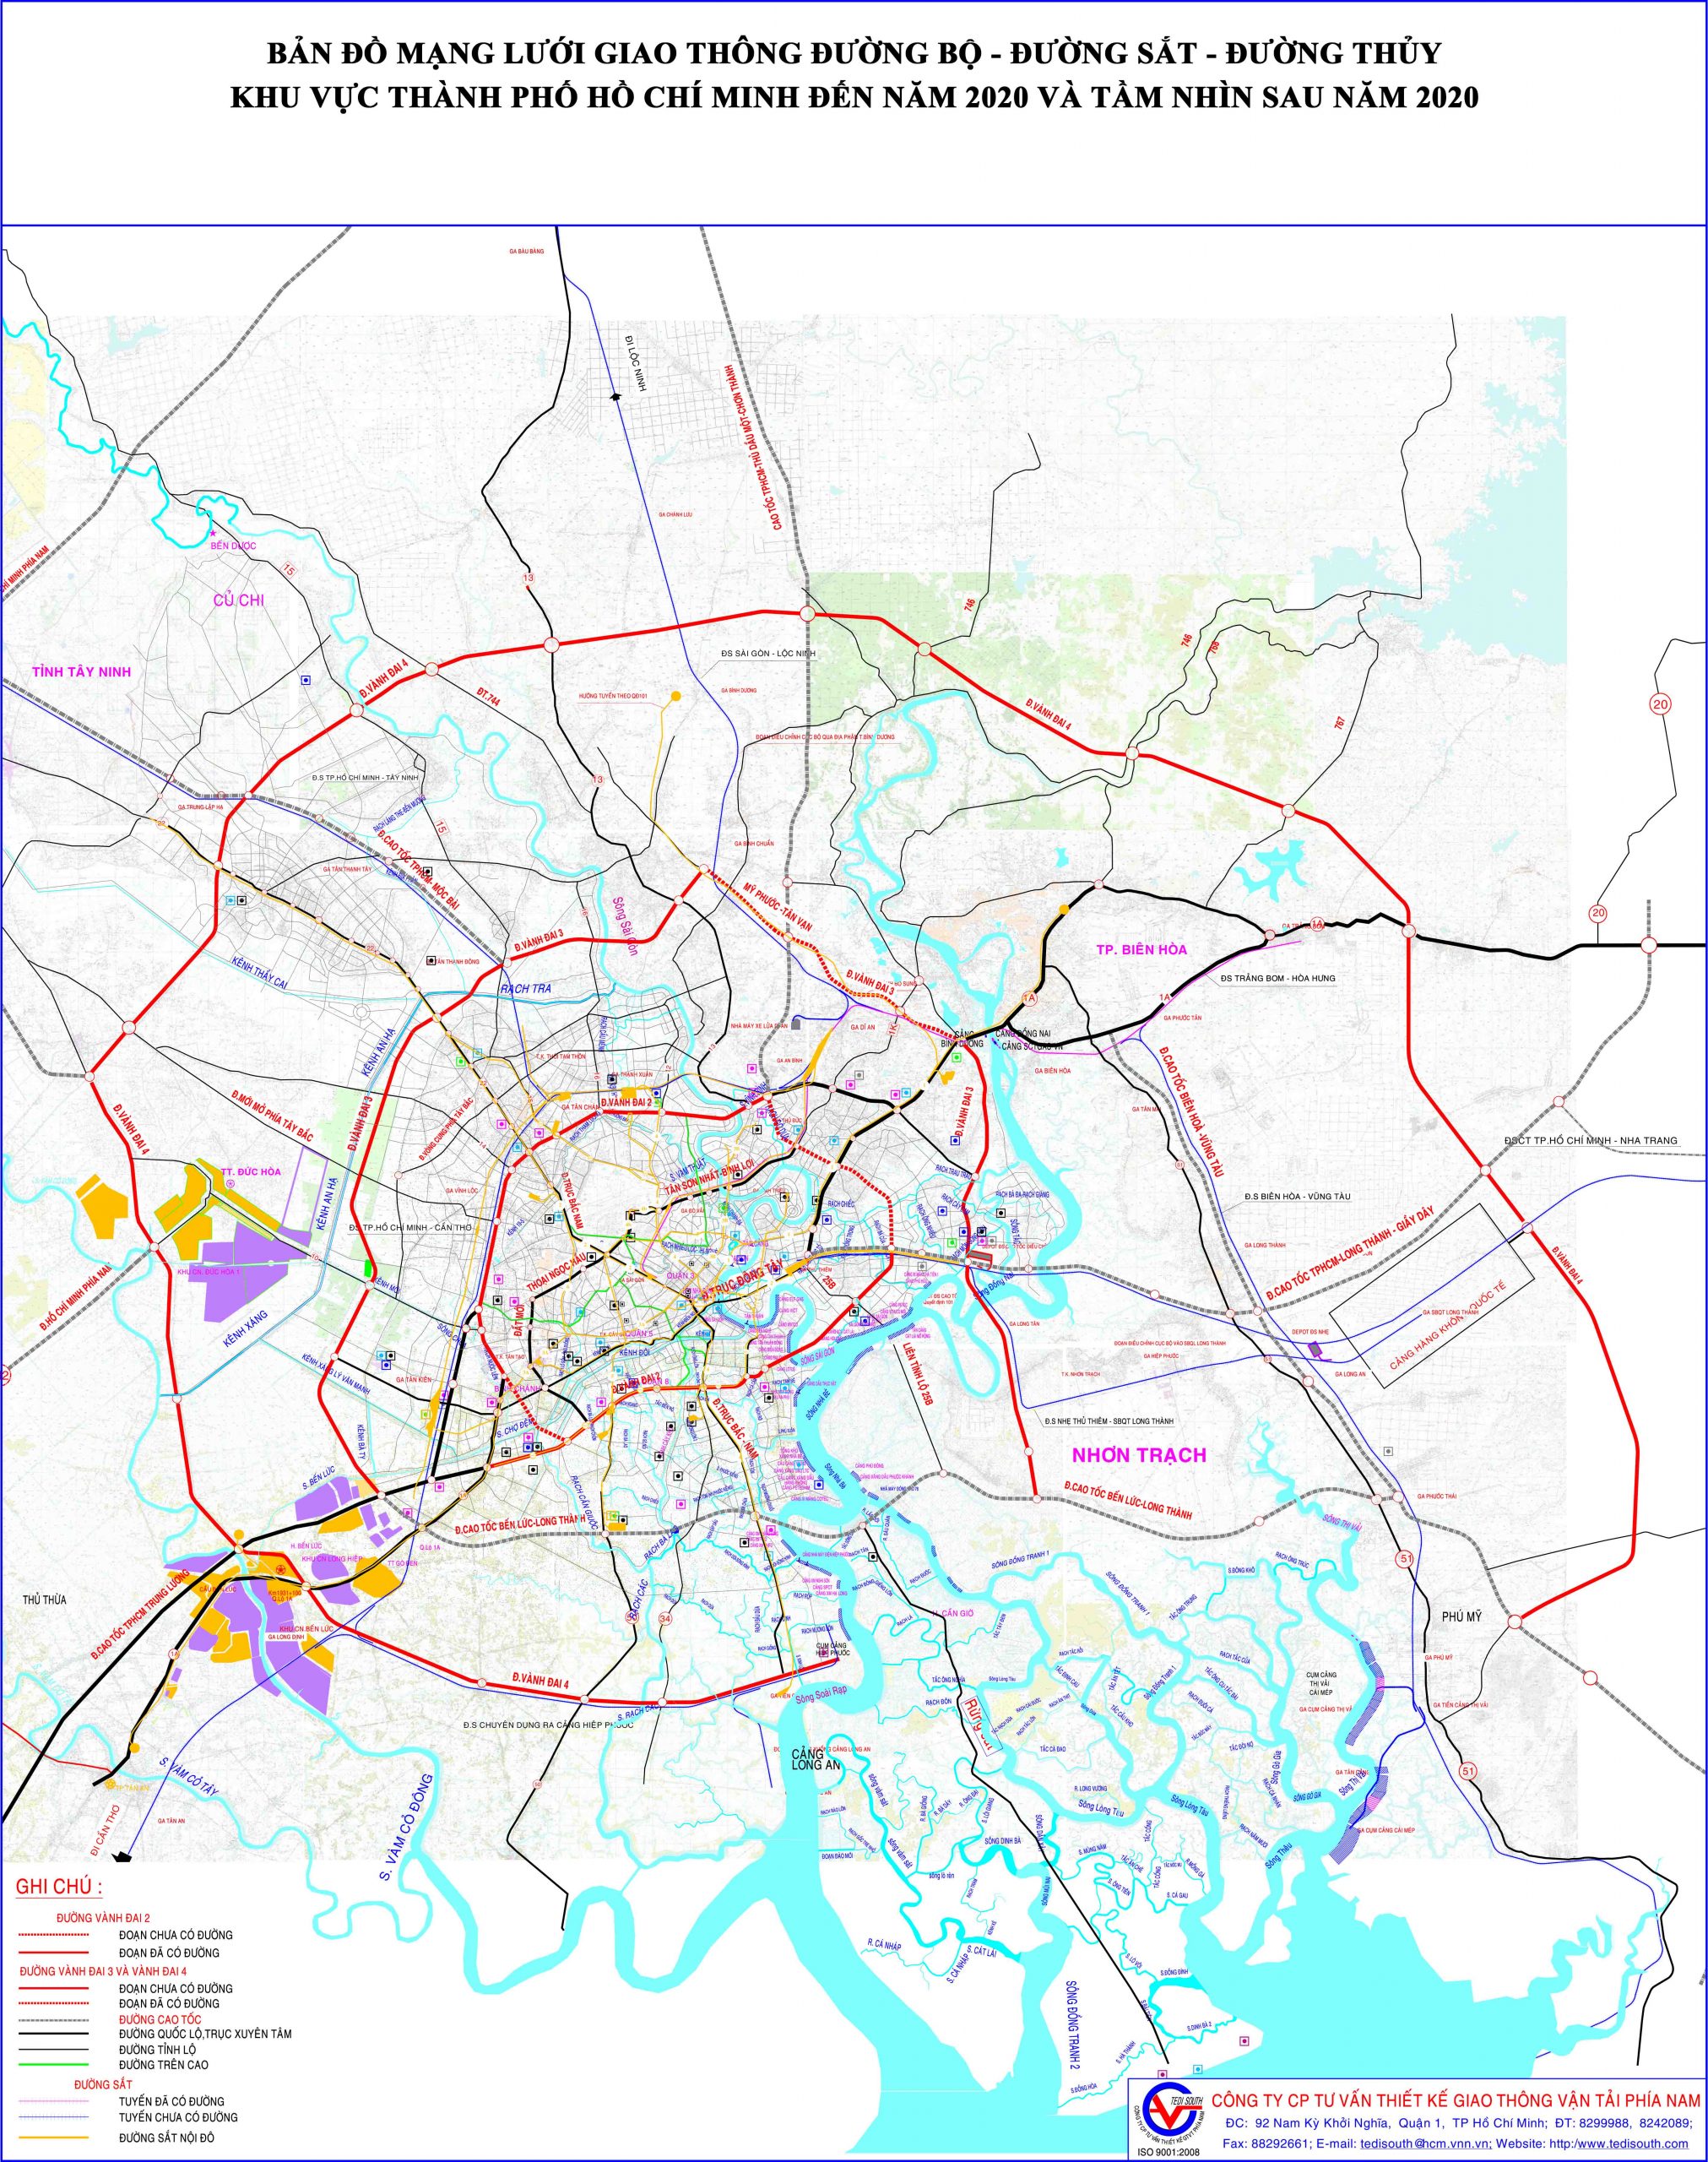 Bản đồ mạng lưới quy hoạch đường giao thông đường bộ, đường thủy, đường sắt khu vực thành phố Hồ Chí Minh đến năm 2020 và tầm nhìn sau năm 2020.